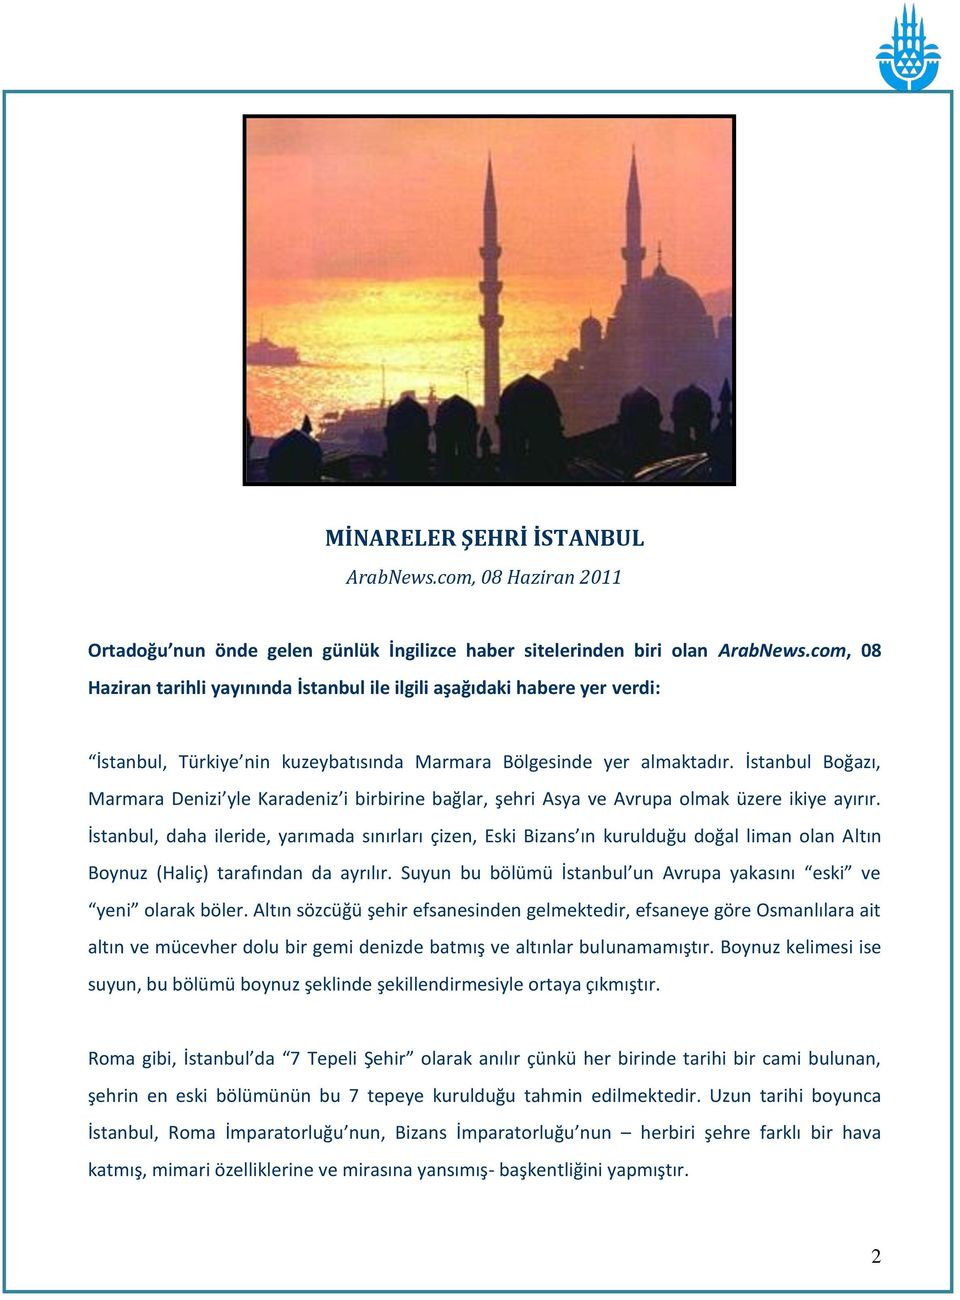 İstanbul Boğazı, Marmara Denizi yle Karadeniz i birbirine bağlar, şehri Asya ve Avrupa olmak üzere ikiye ayırır.